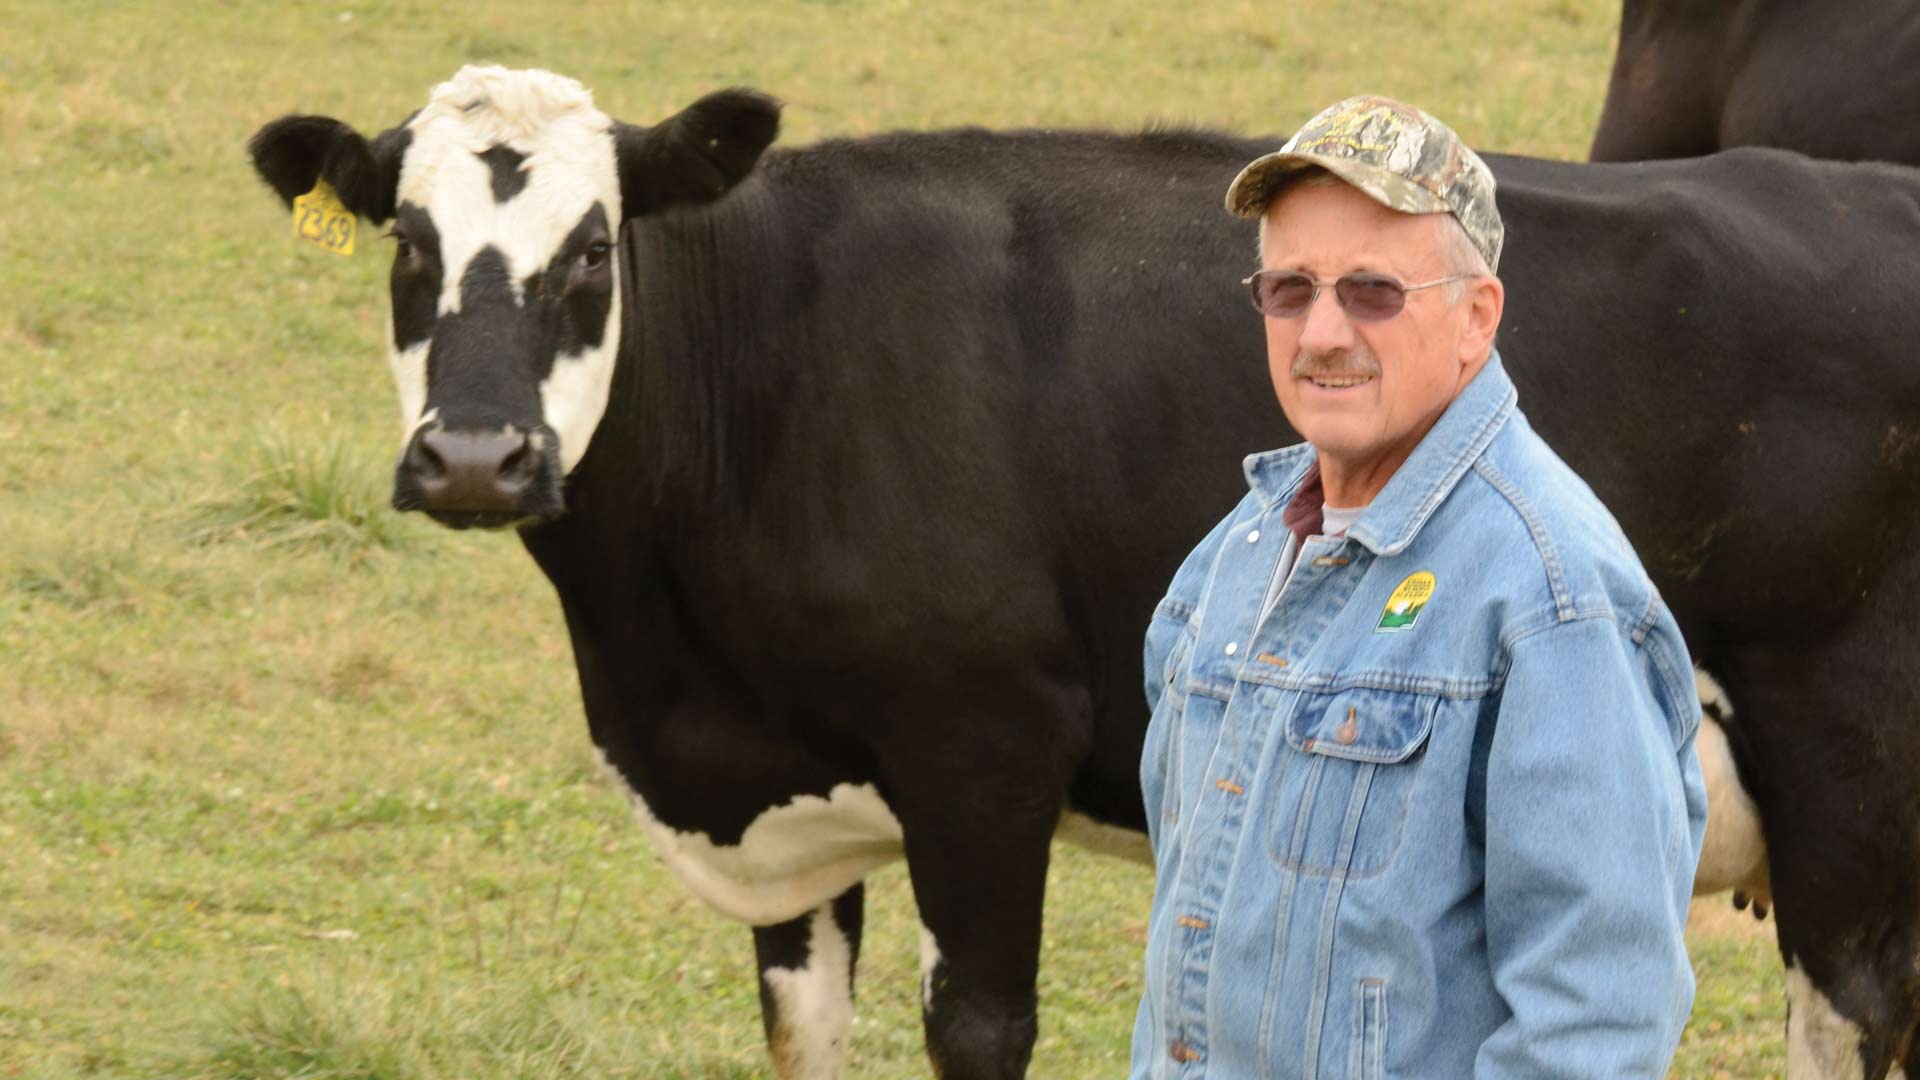 farmer standing near a cow